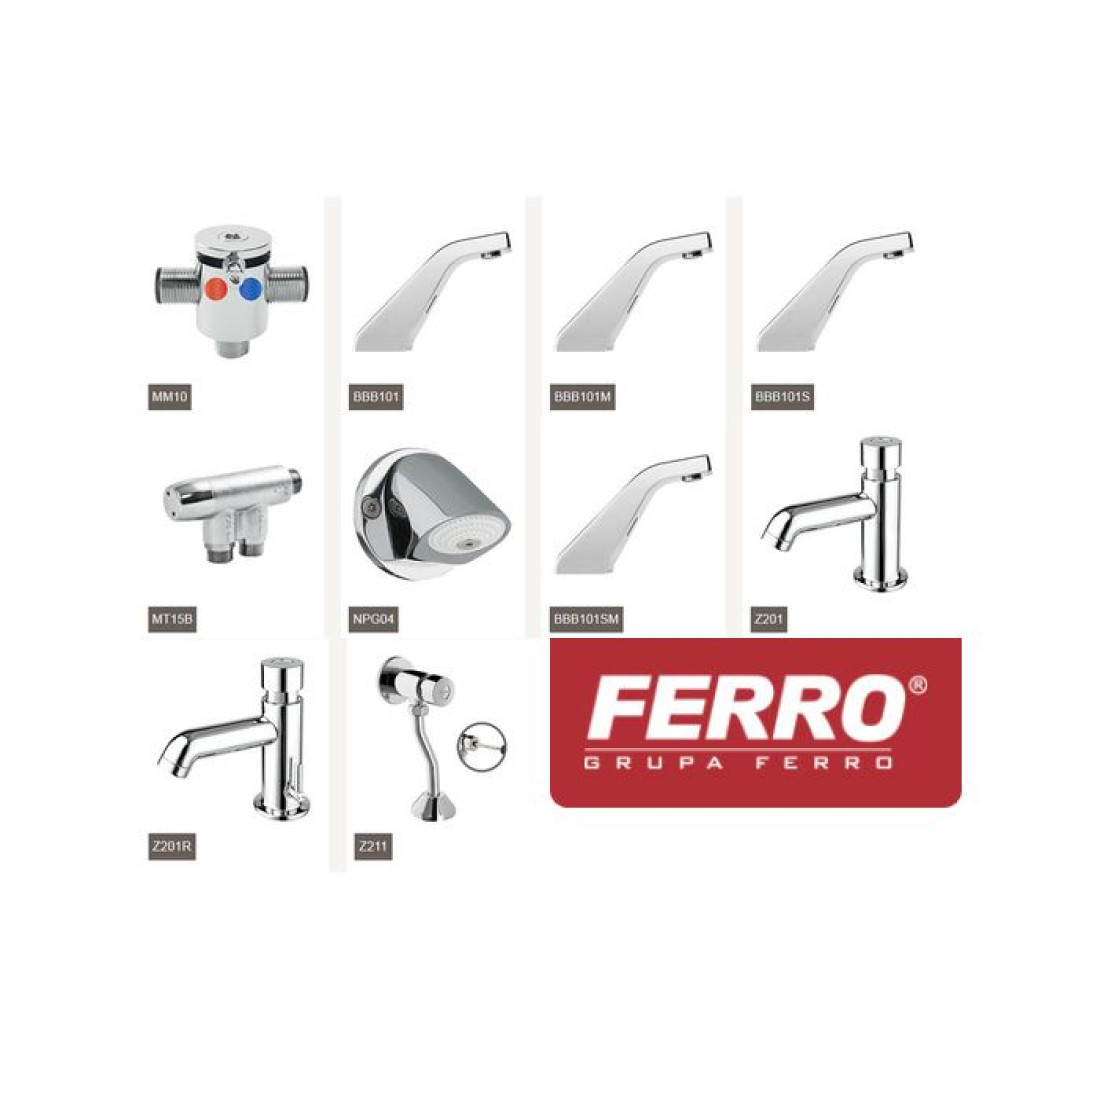 Nowe produkty FERRO dla obiektów użyteczności publicznej